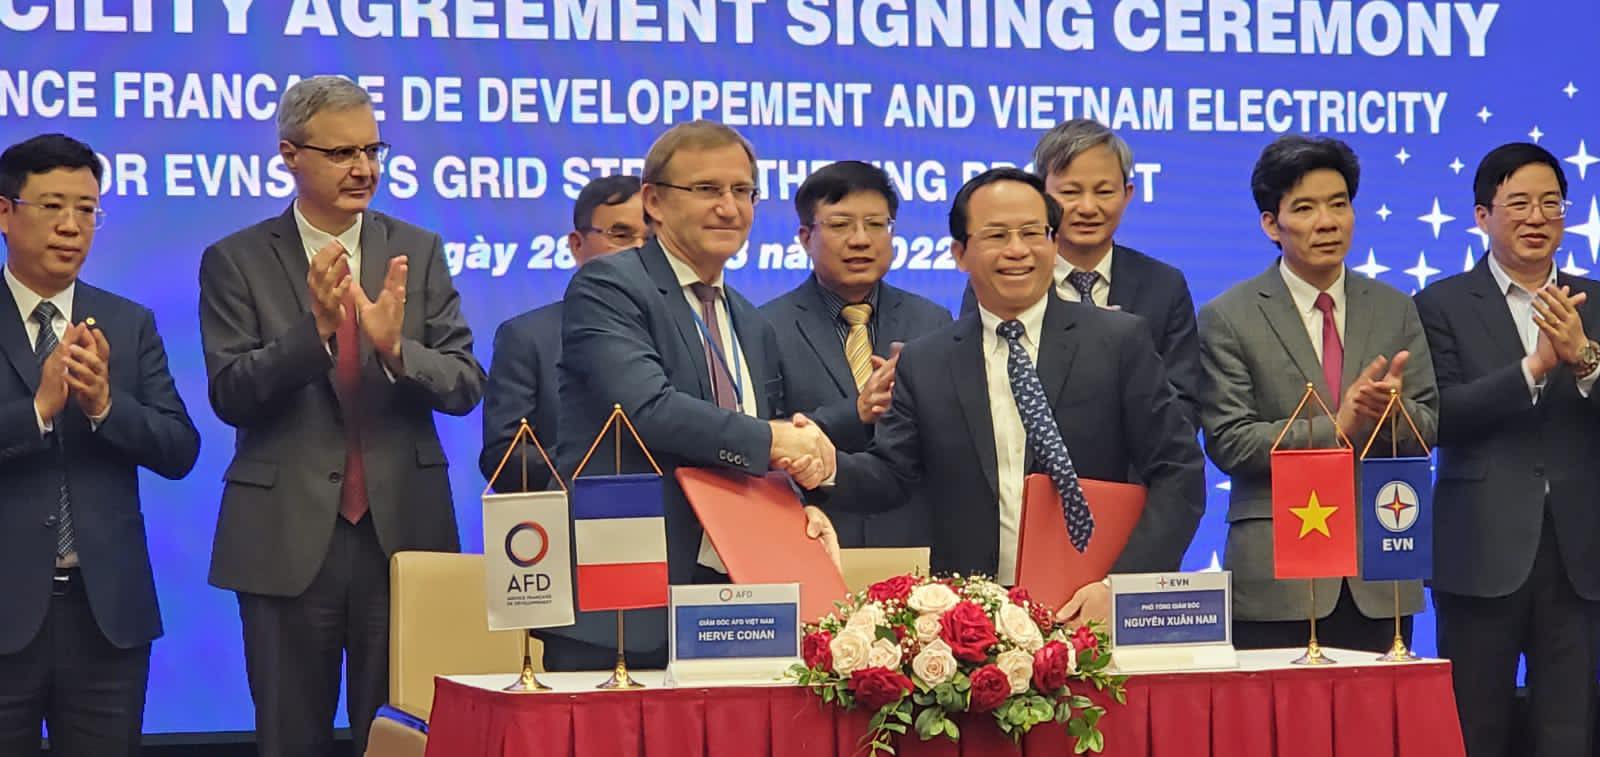 Ký kết thỏa thuận hợp tác cho vay ưu đãi để phát triển lưới điện miền Nam - Ảnh: EVN